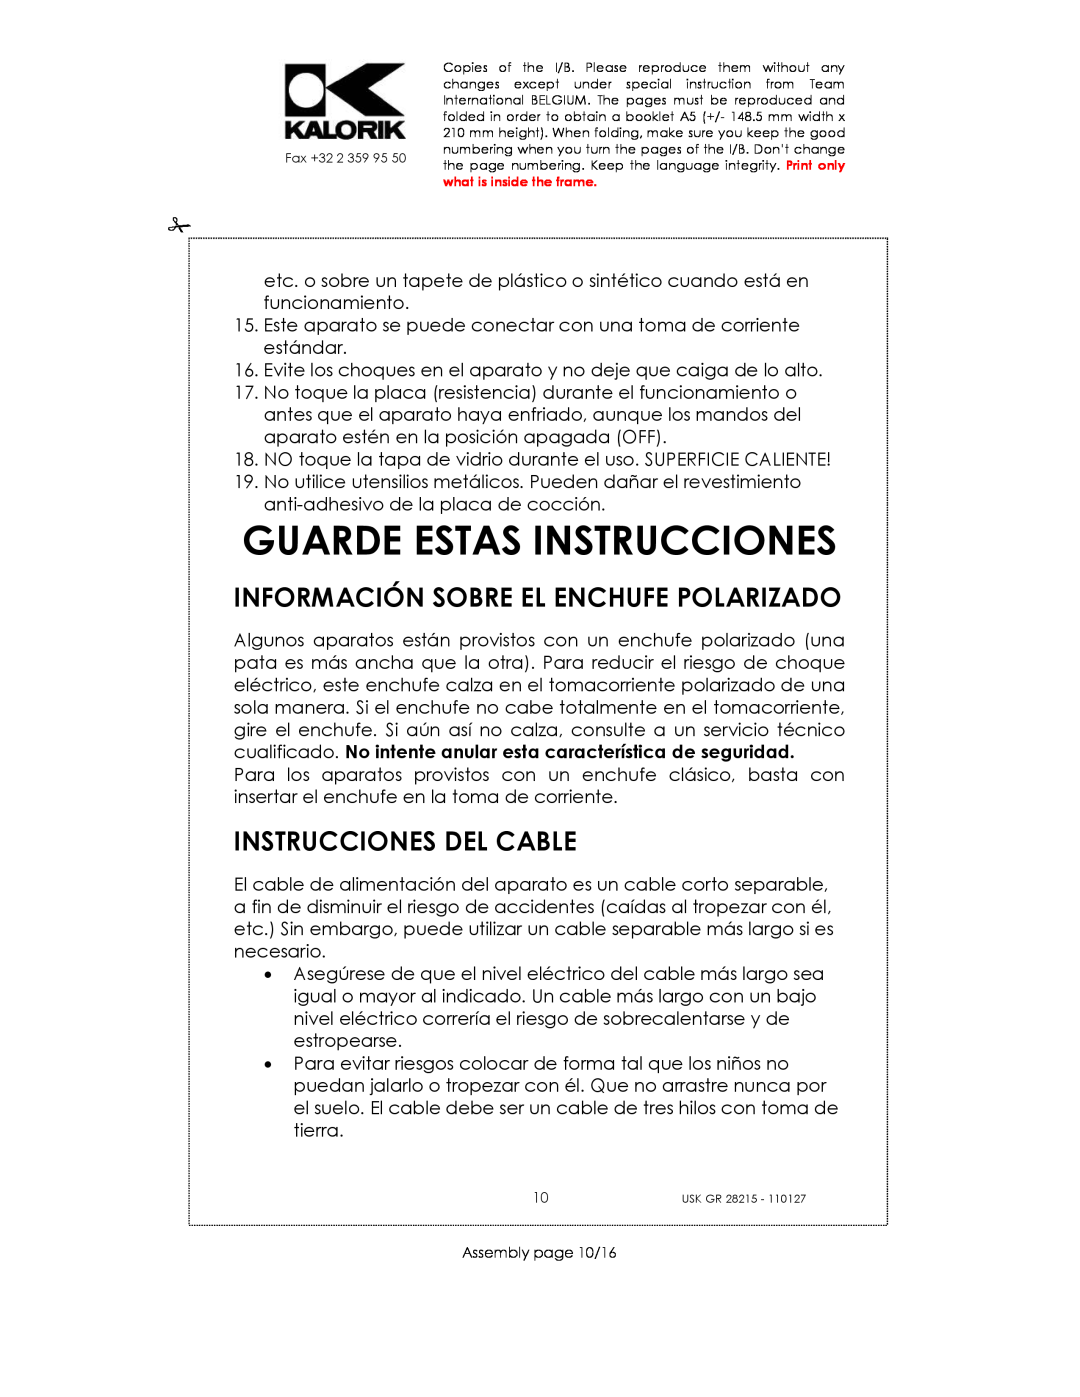 Kalorik USK GR 28215 manual Guarde Estas Instrucciones, Información Sobre El Enchufe Polarizado, Instrucciones Del Cable 